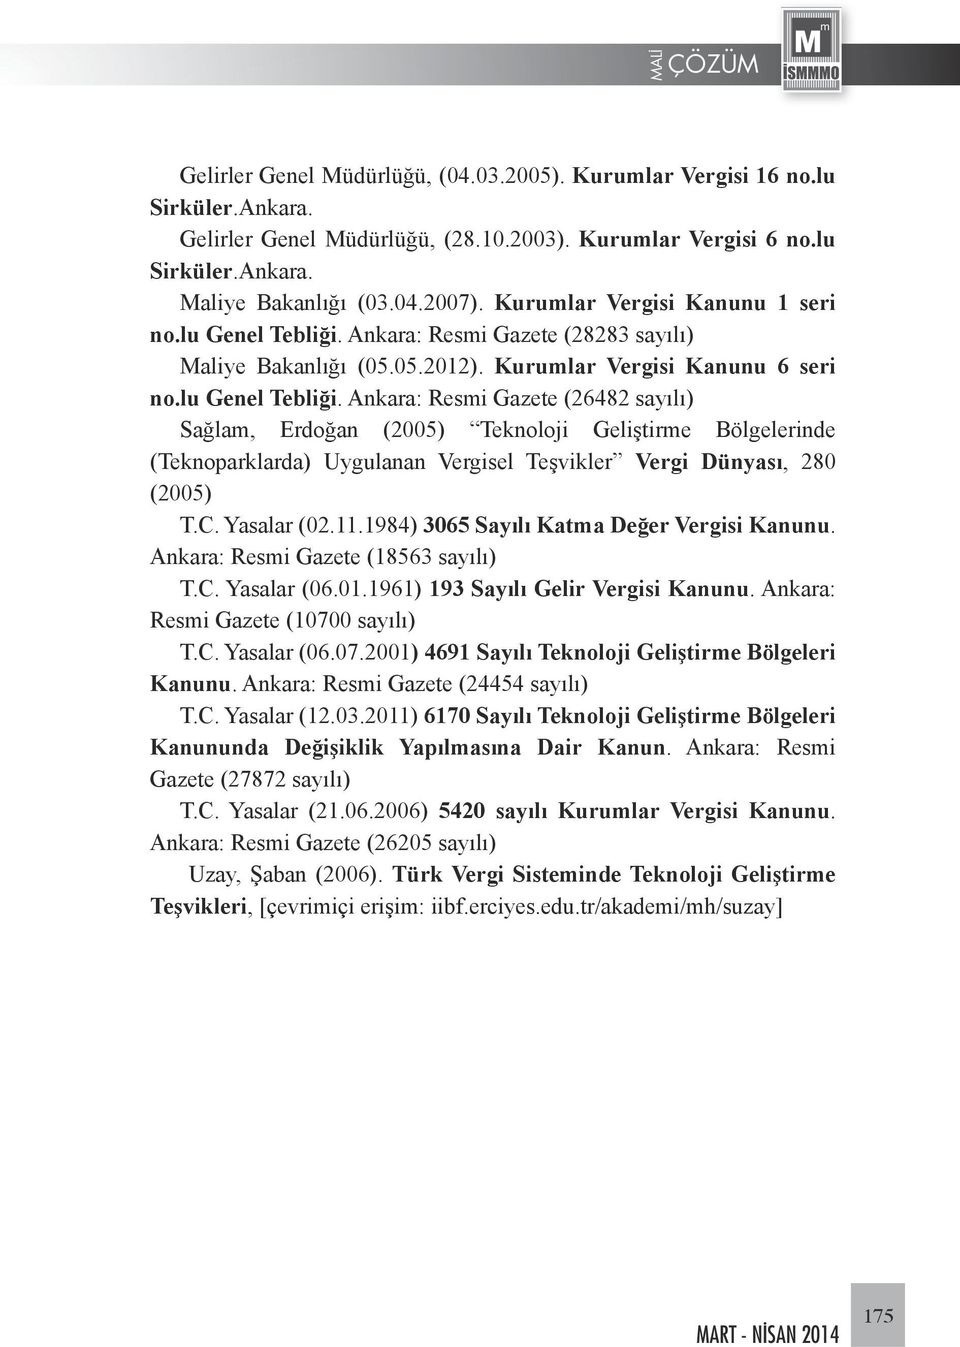 Ankara: Resmi Gazete (28283 sayılı) Maliye Bakanlığı (05.05.2012). Kurumlar Vergisi Kanunu 6 seri no.lu Genel Tebliği.